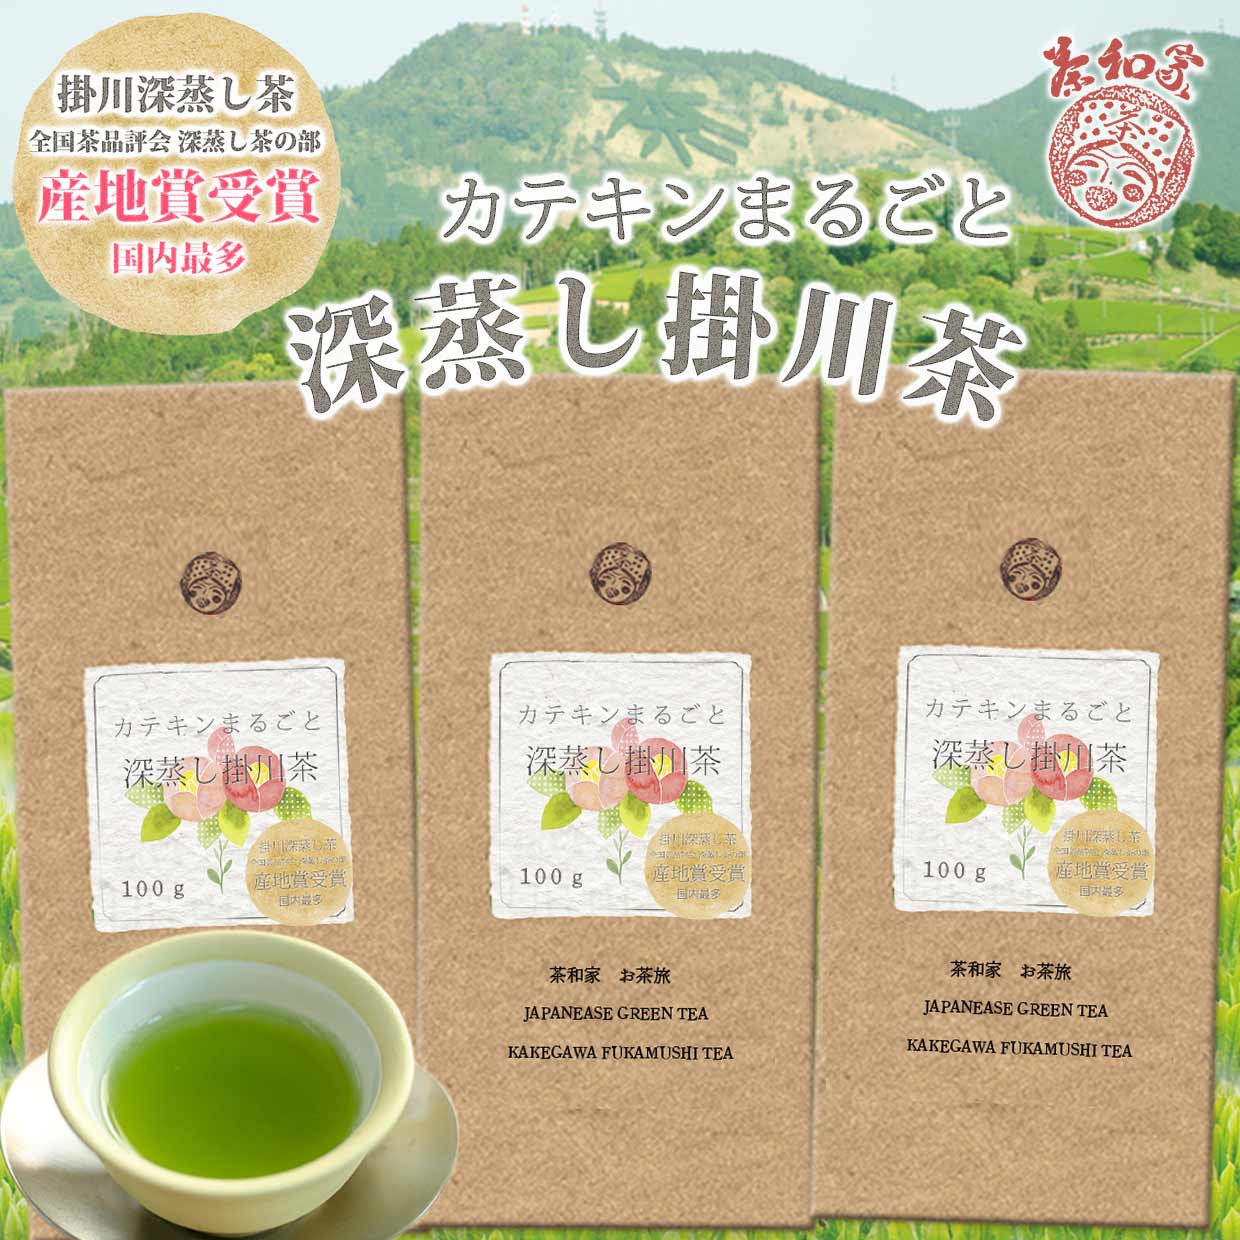 お茶 緑茶 茶葉 掛紙21種 産地賞受賞